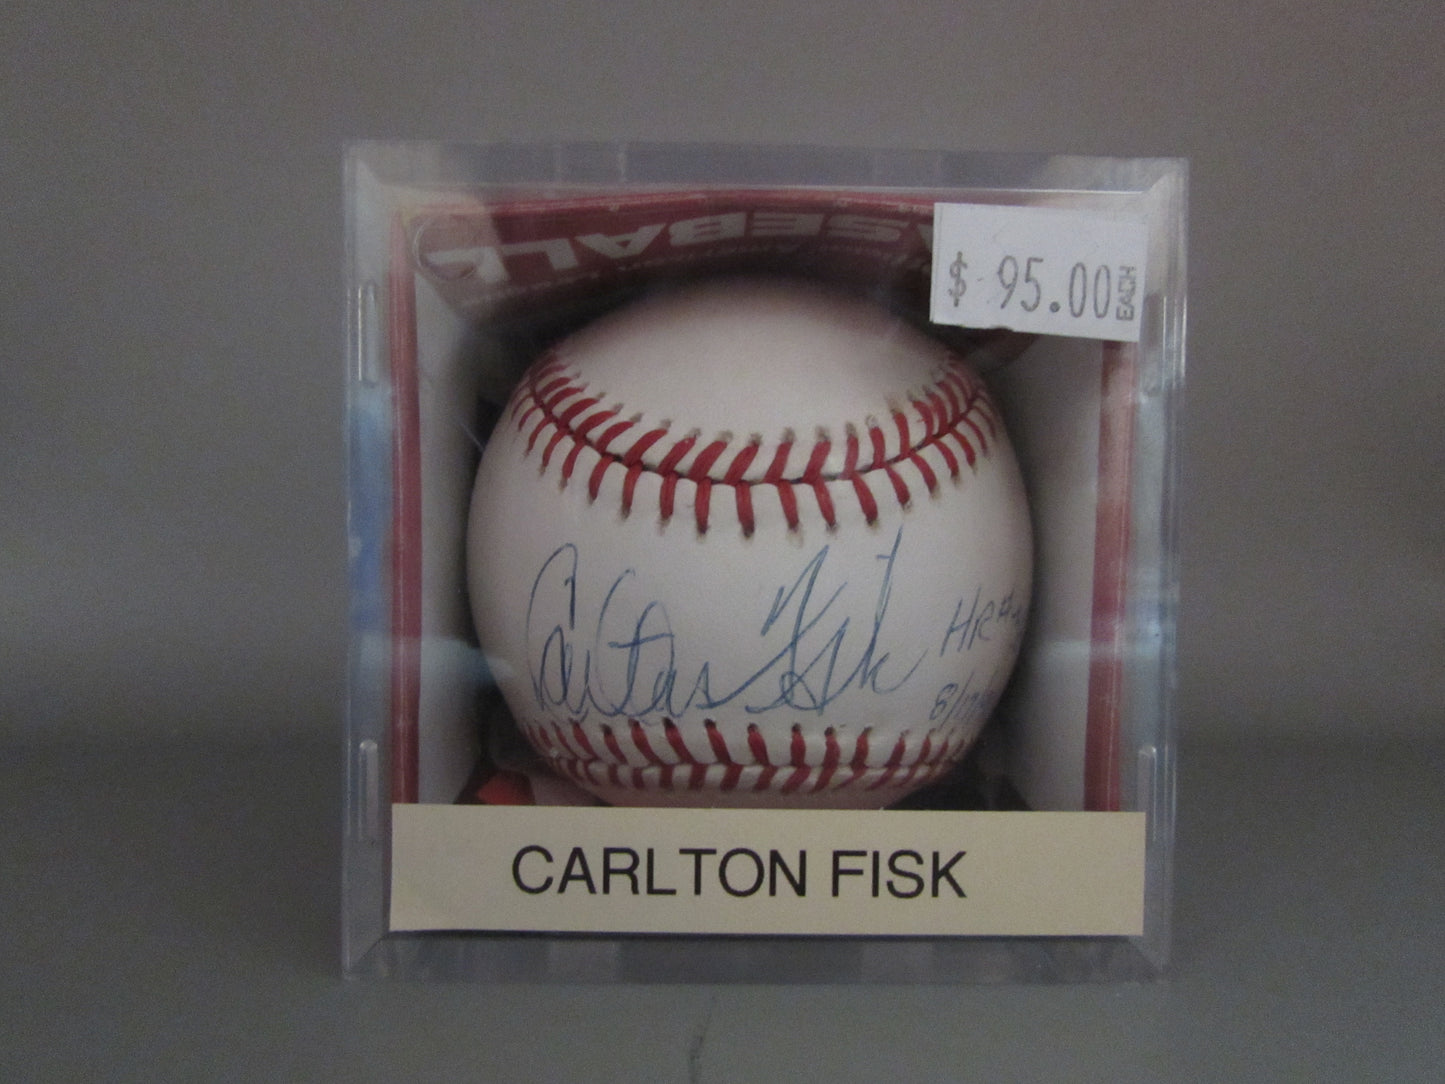 Carlton Fisk signed baseball